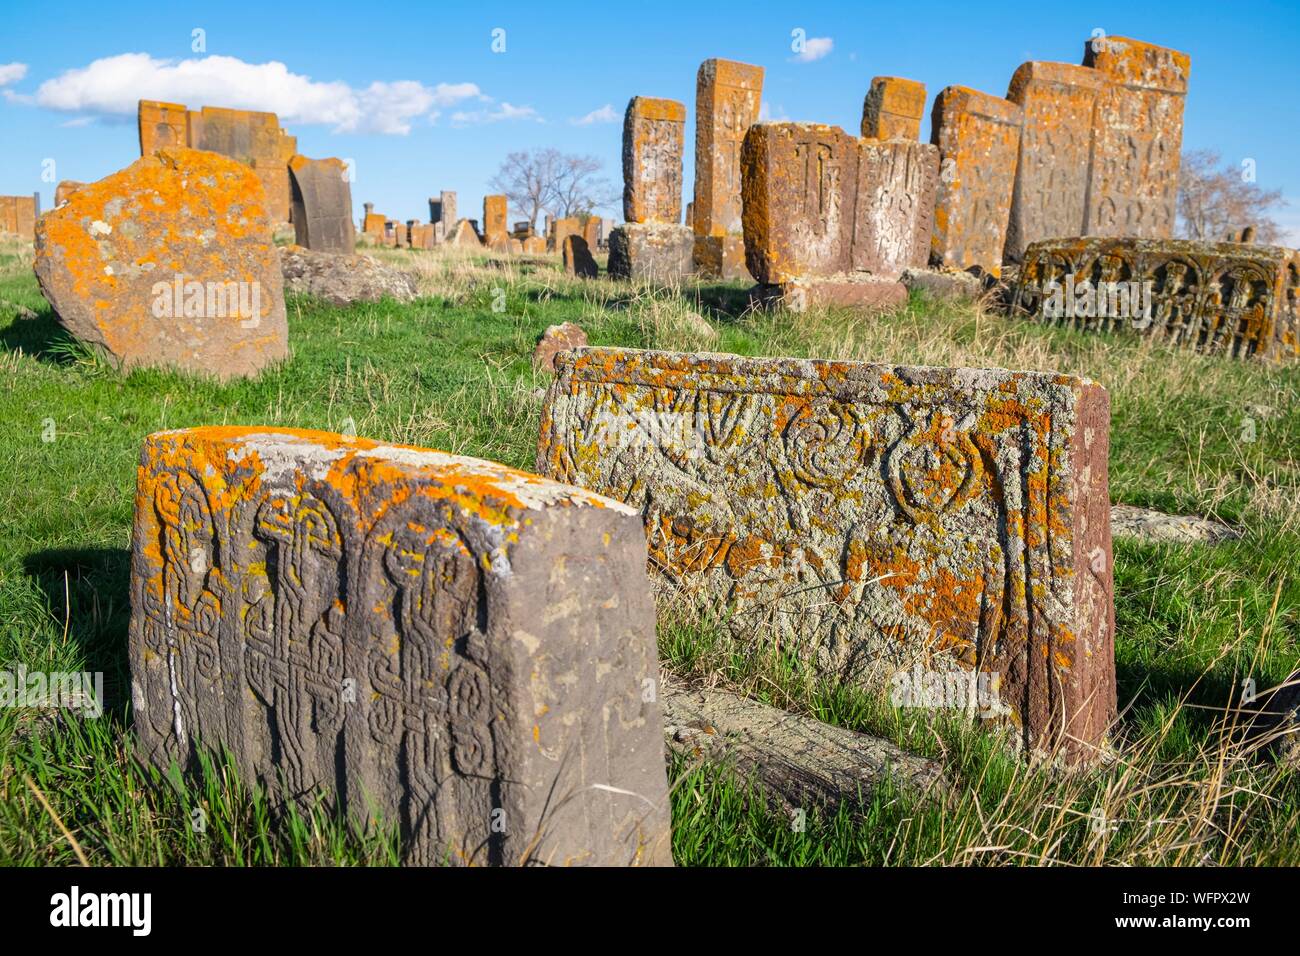 Armenia, Gegharkunik region, surroundings of Sevan, Noraduz (or Noratus), cemetery of medieval tombs called khachkars on the banks of Sevan lake Stock Photo